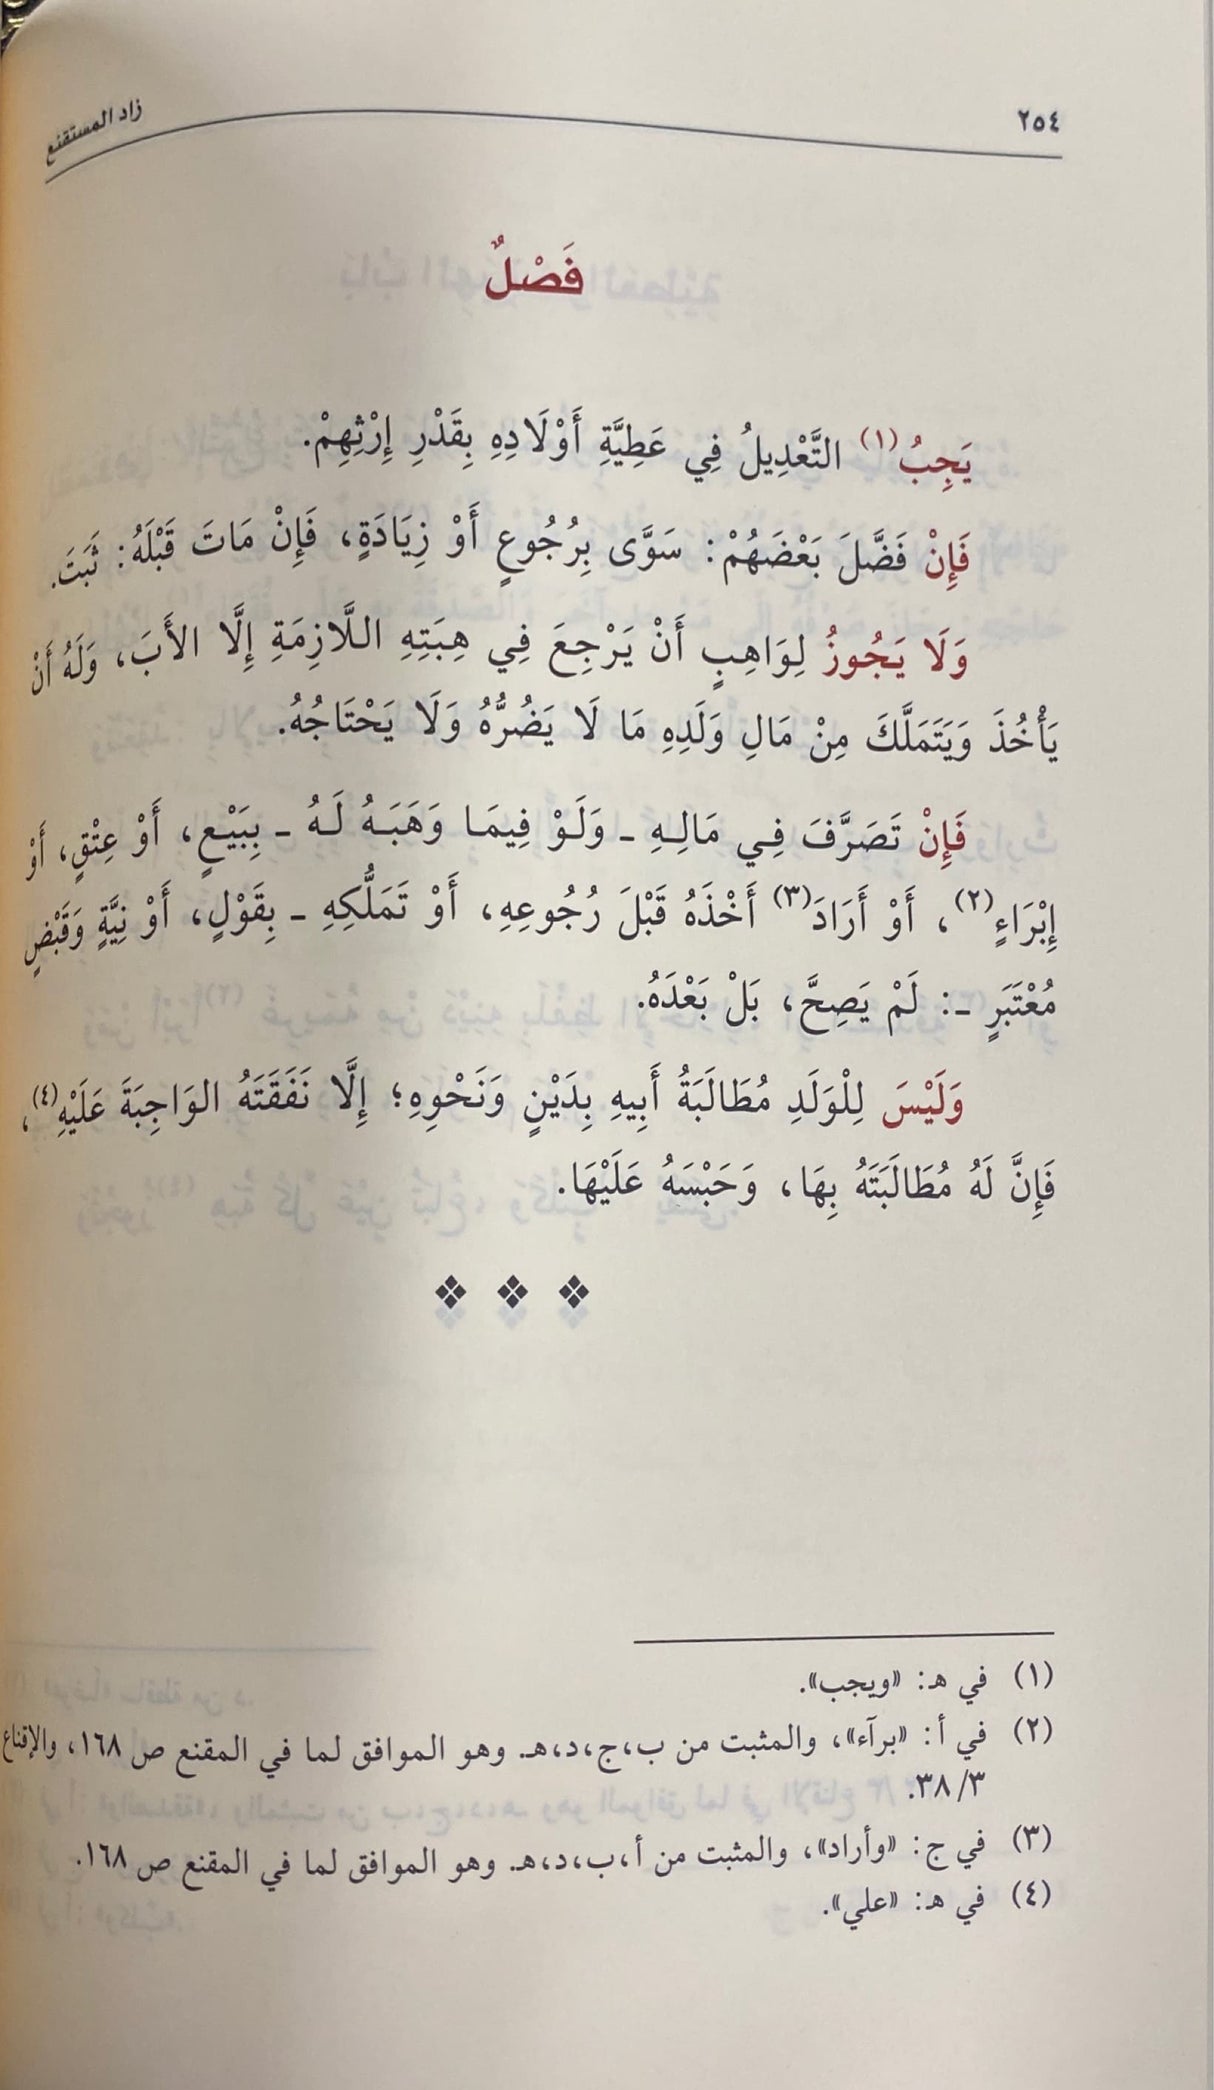 زاد المستقنع في اختصار المقنع   Zad Al Mustaqni Fi Ikhtisar Al Muqni (Large)(Qasim)